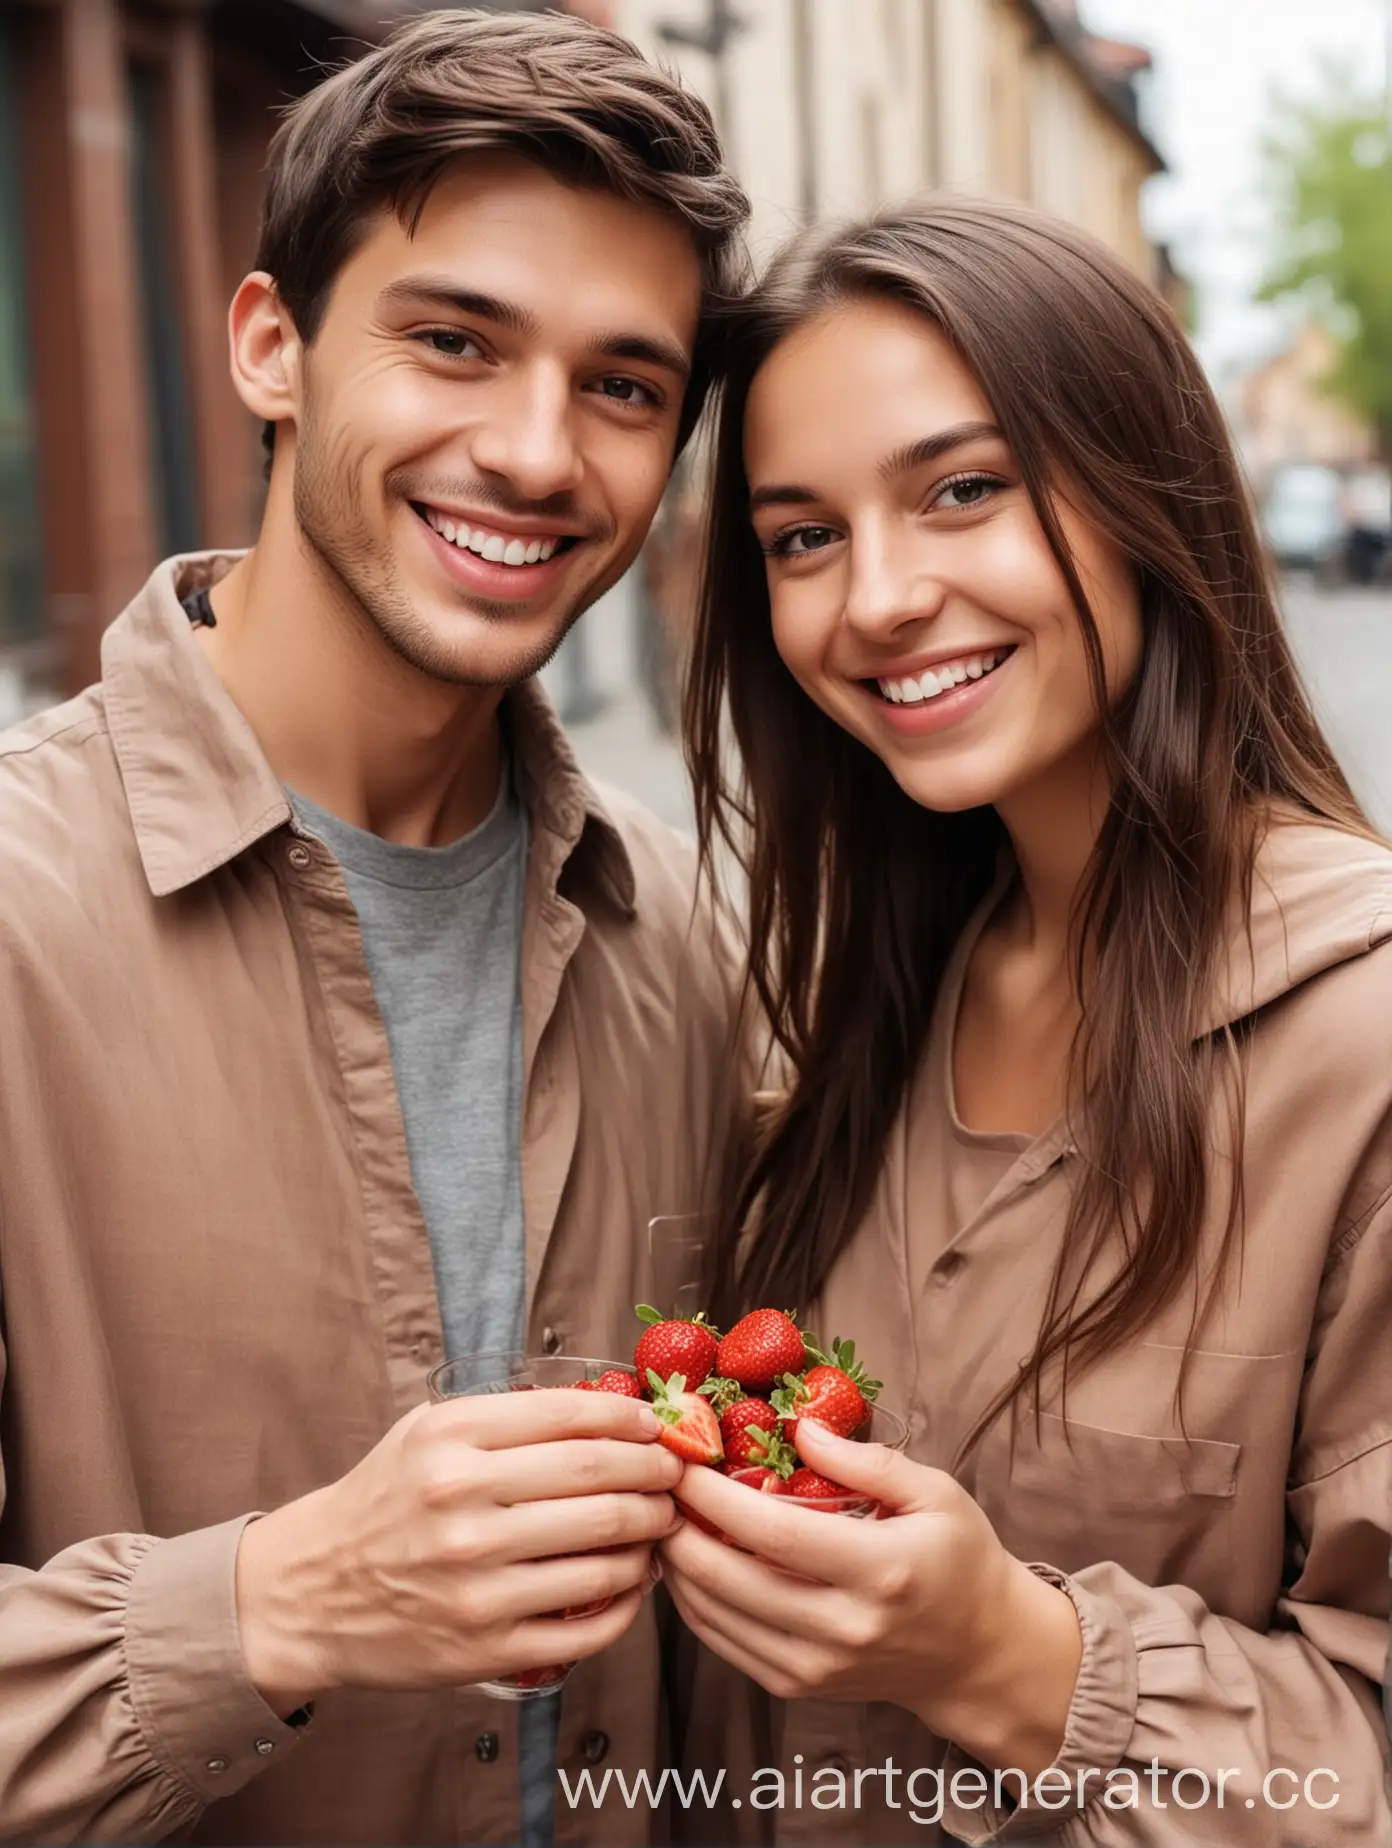 молодая счастливая пара идет по улице, девушка держит в руке стаканчик с клубникой в шоколаде, они улыбаются